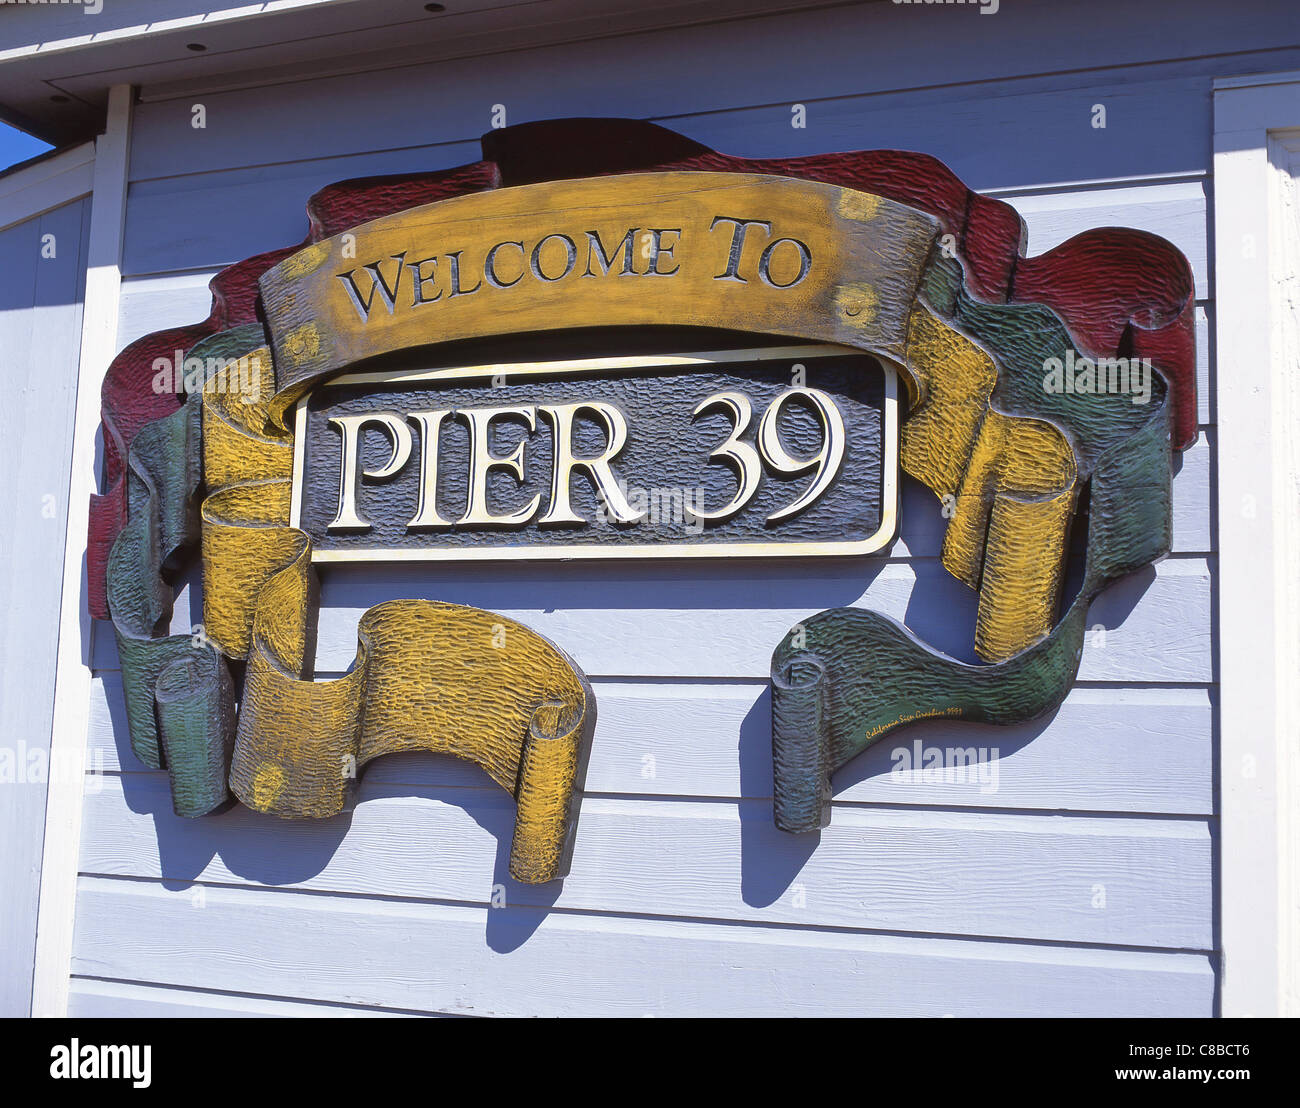 Pier 39 Ortseingangsschild, San Francisco, California, Vereinigte Staaten von Amerika Stockfoto